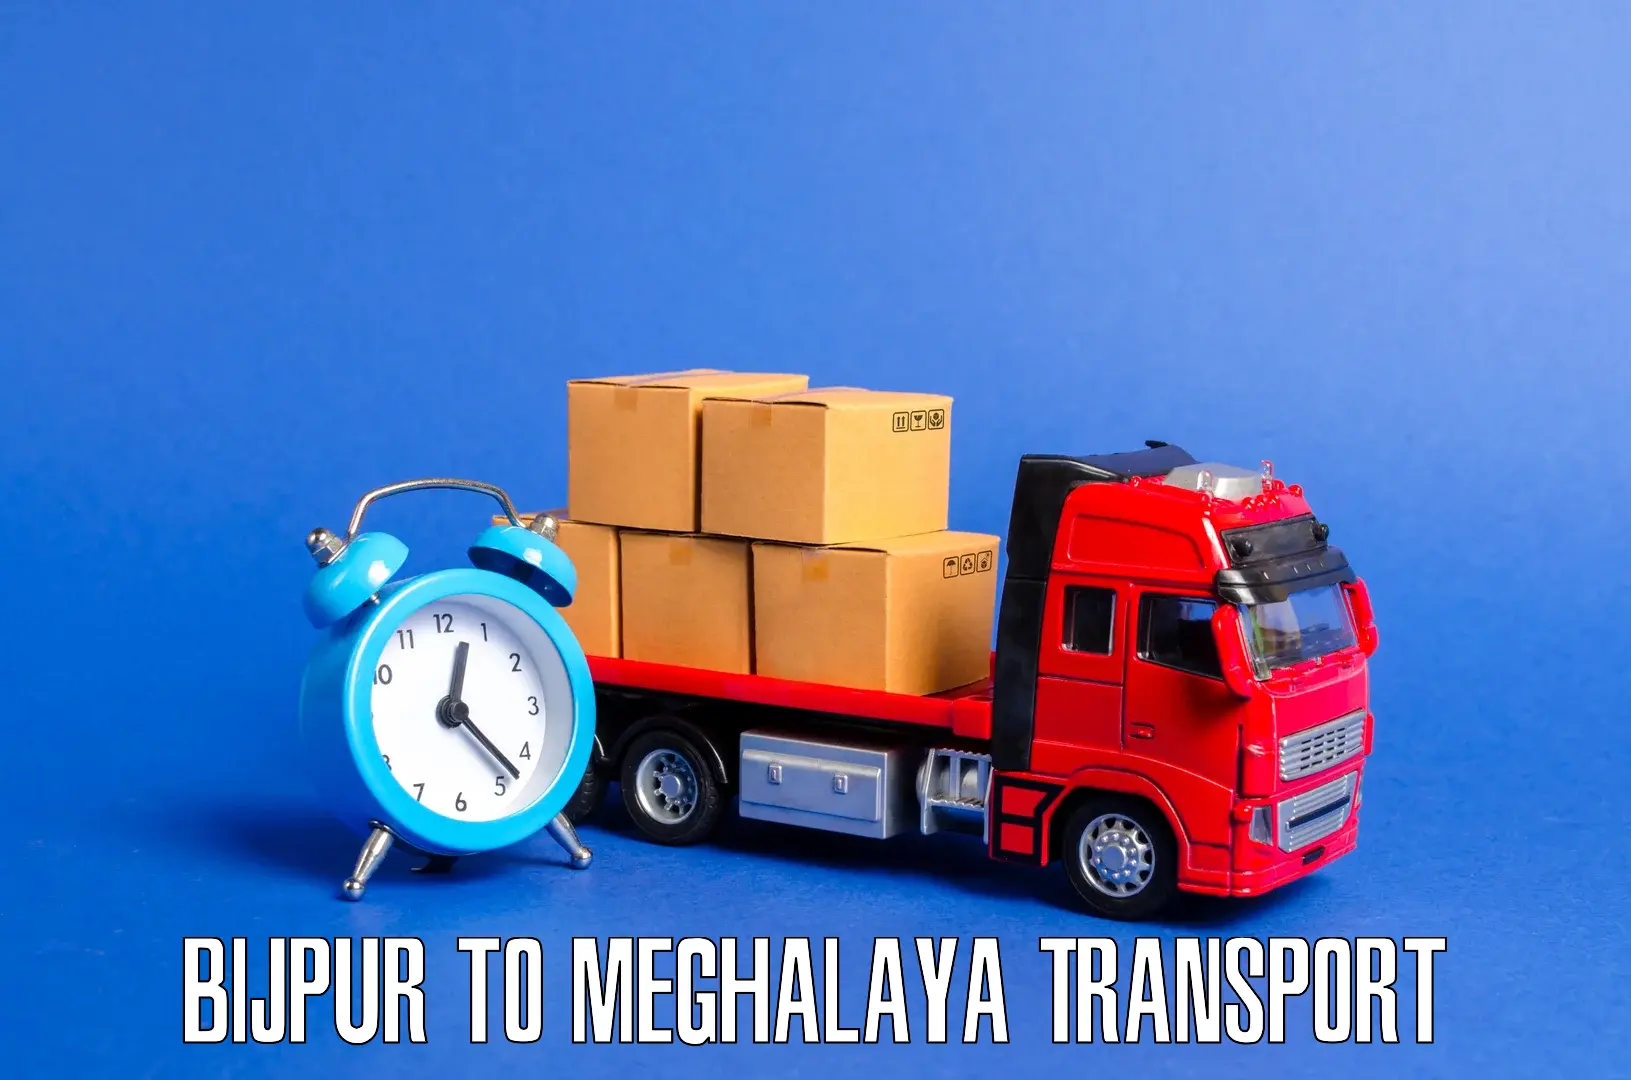 Cargo train transport services Bijpur to Williamnagar